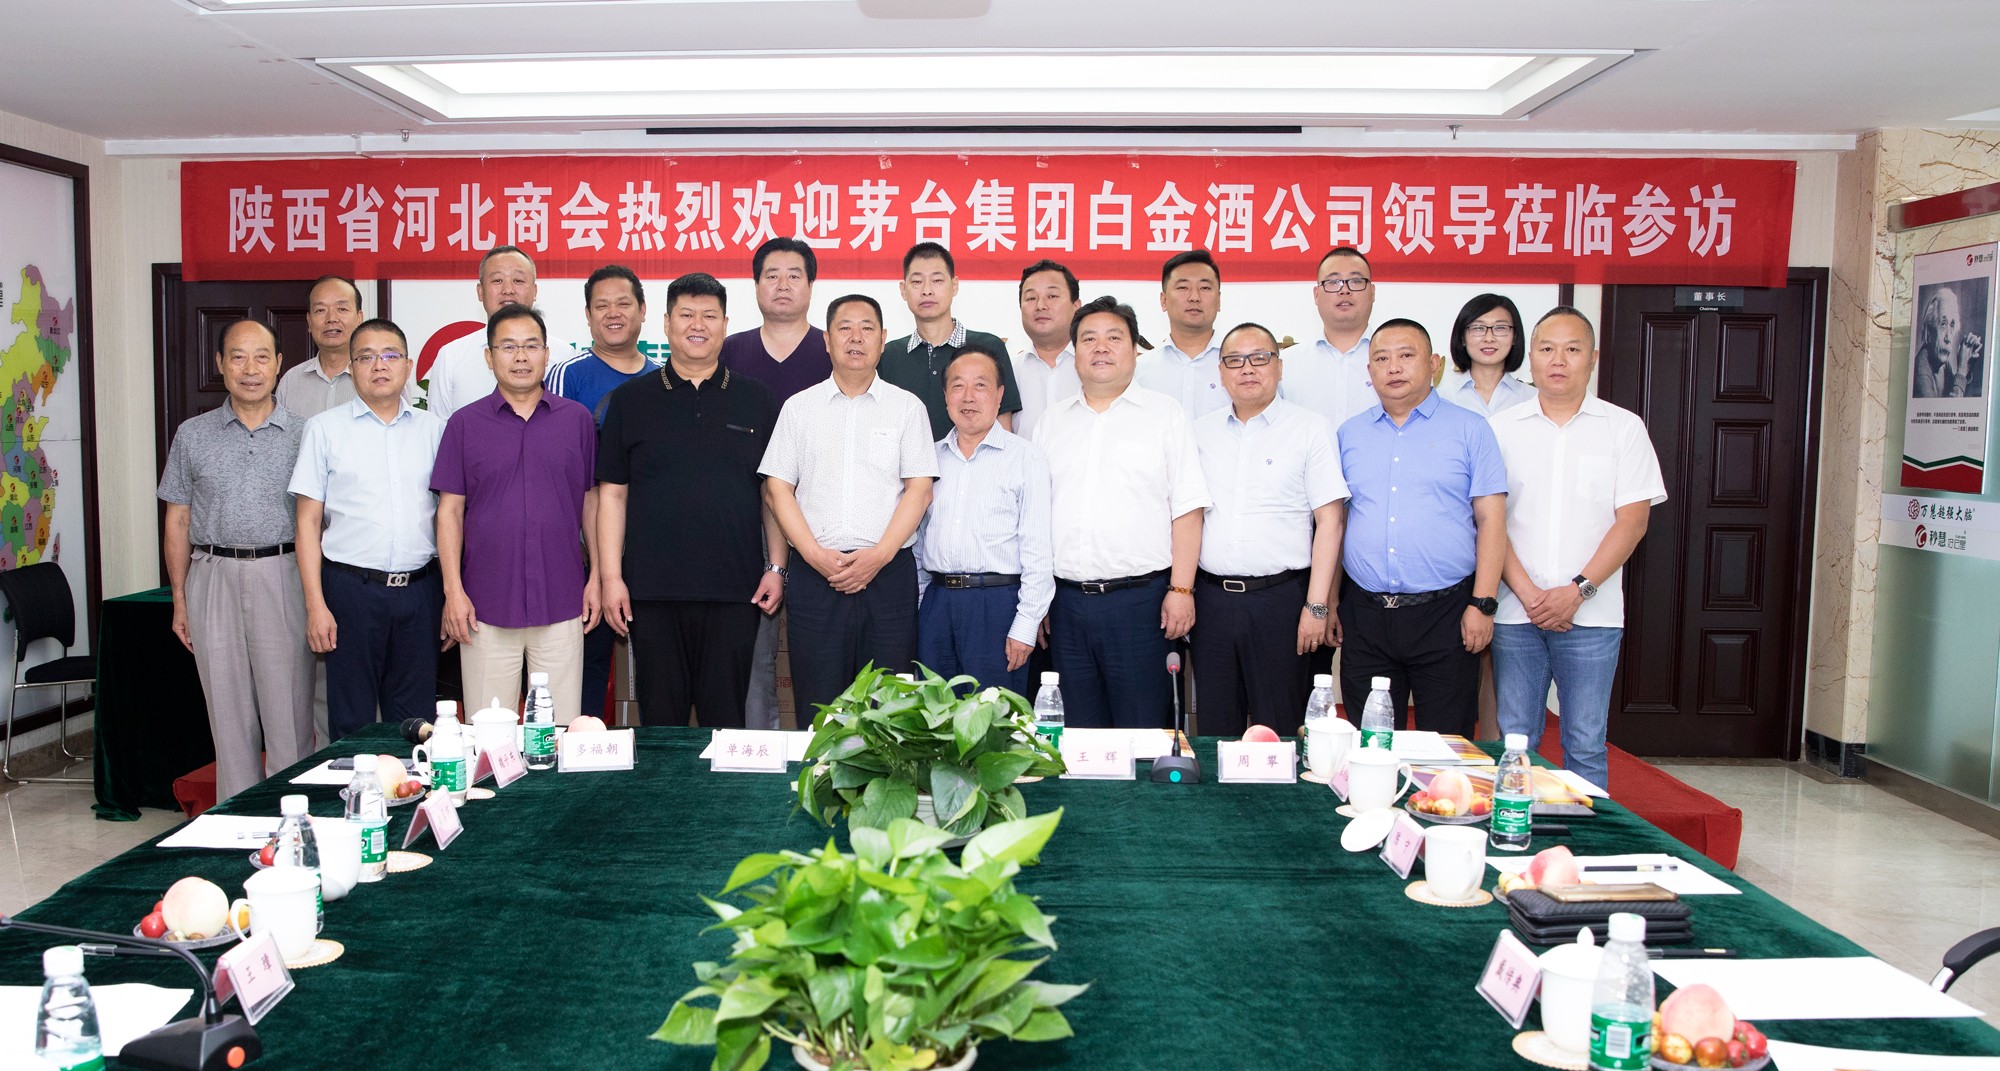 挖掘合作潛力 構建伙伴關系丨白金酒公司參訪慰問陜西省河北商會